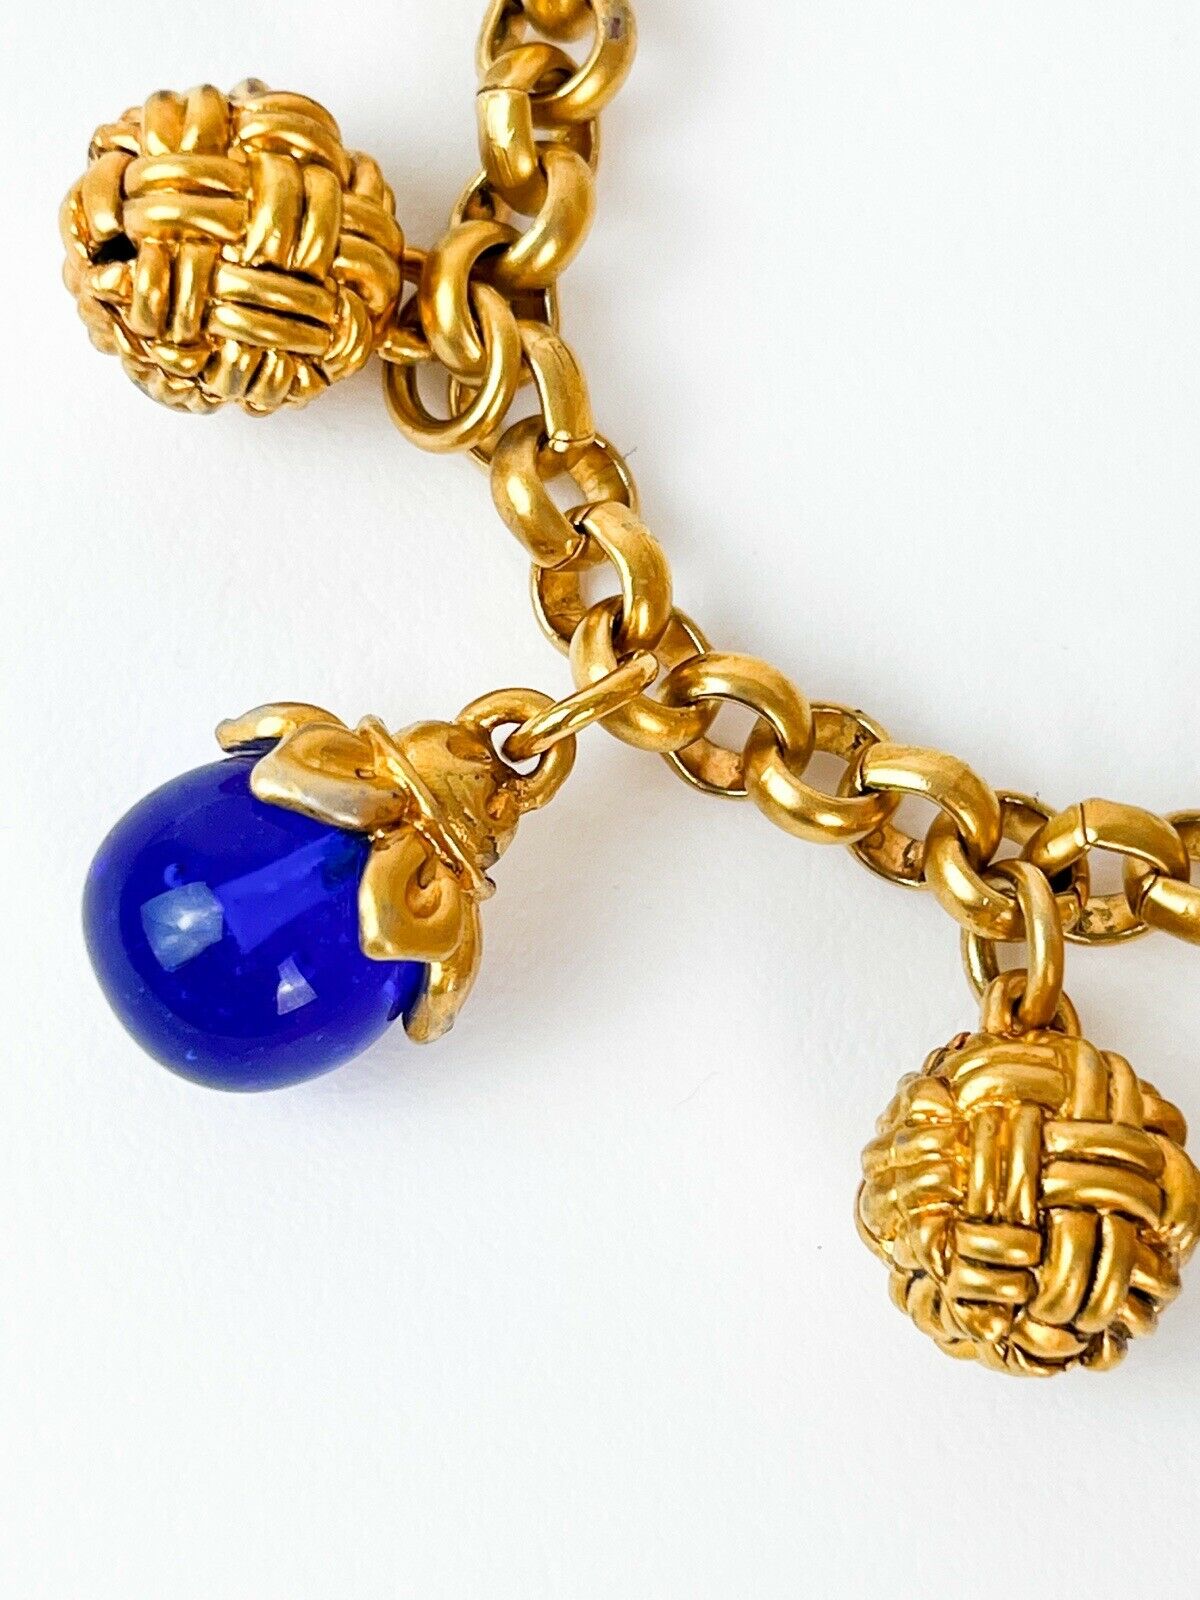 KENZO Paris Vintage Bracelet Gold Tone Dangling Charm Blue Glass Cabochon